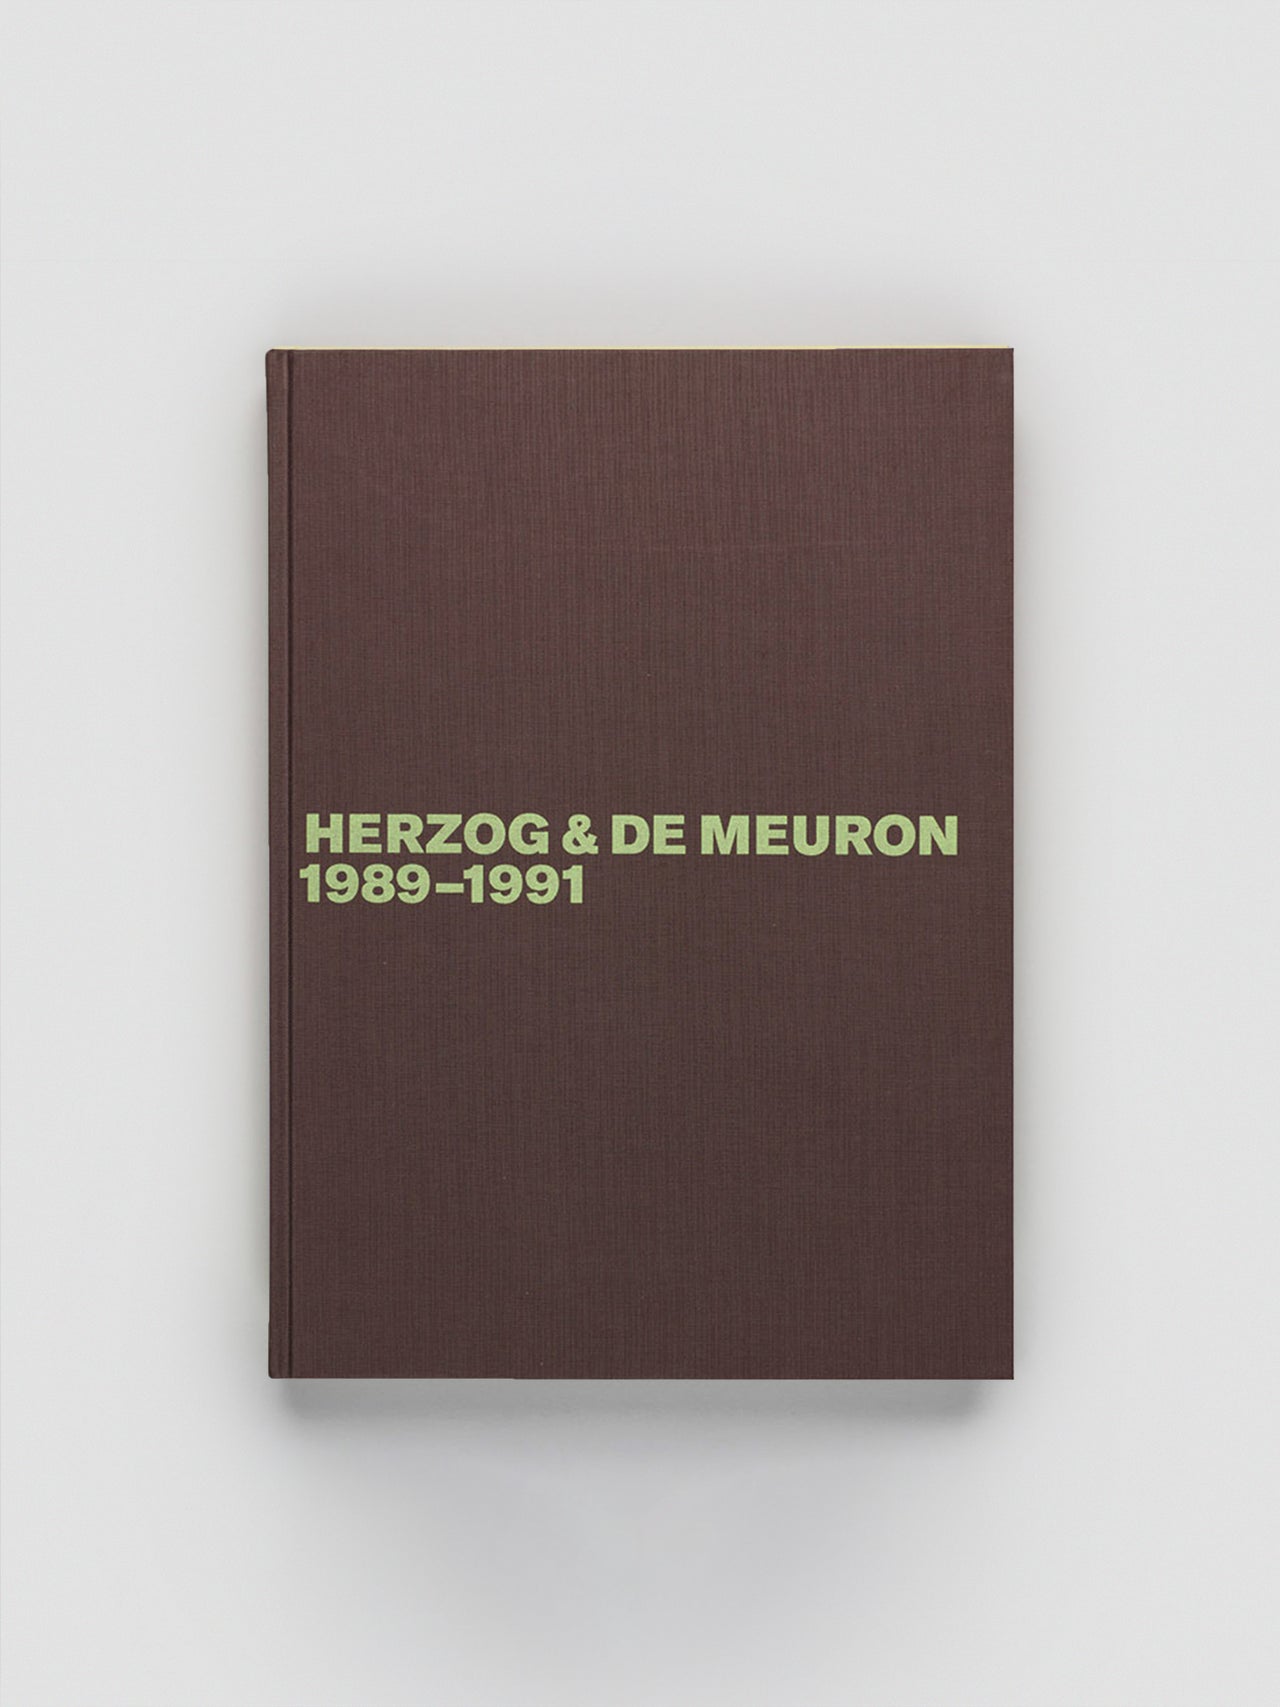 Herzog & de Meuron 1989-1991 Volume 2